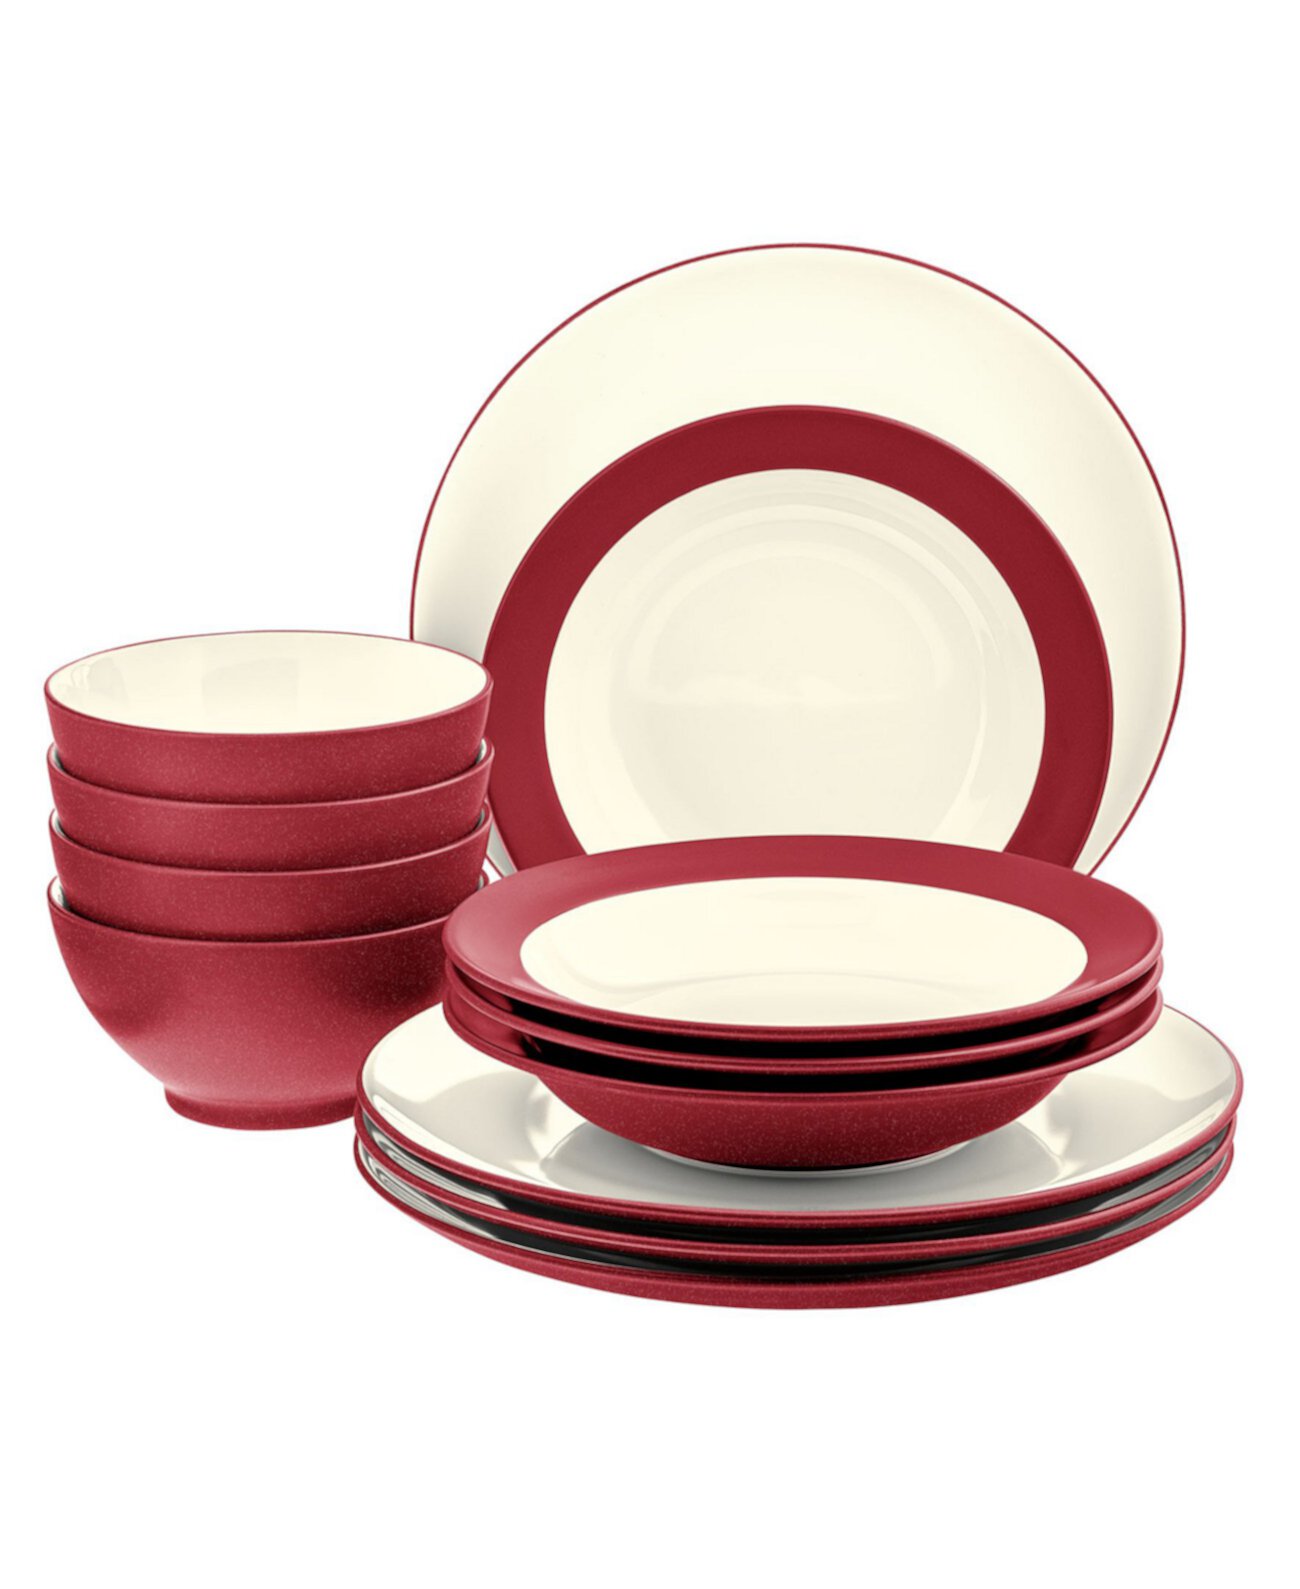 Набор столовой посуды Colorwave Coupe из 12 предметов, сервиз для 4 человек, создан для Macy's Noritake